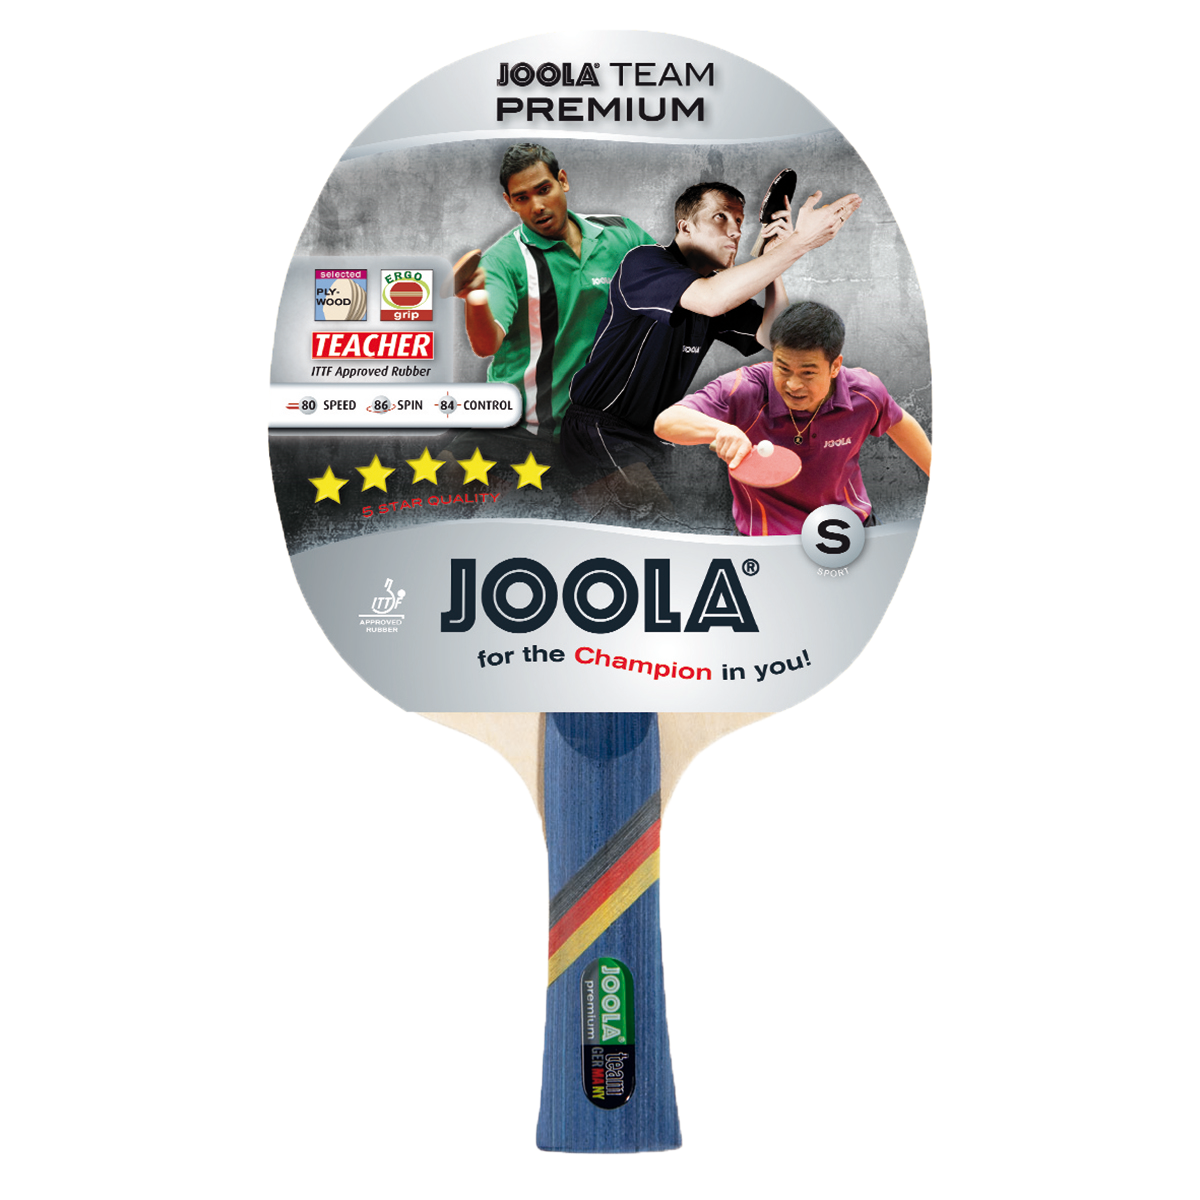 JOOLA TEAM PREMIUM Table Tennis Racket